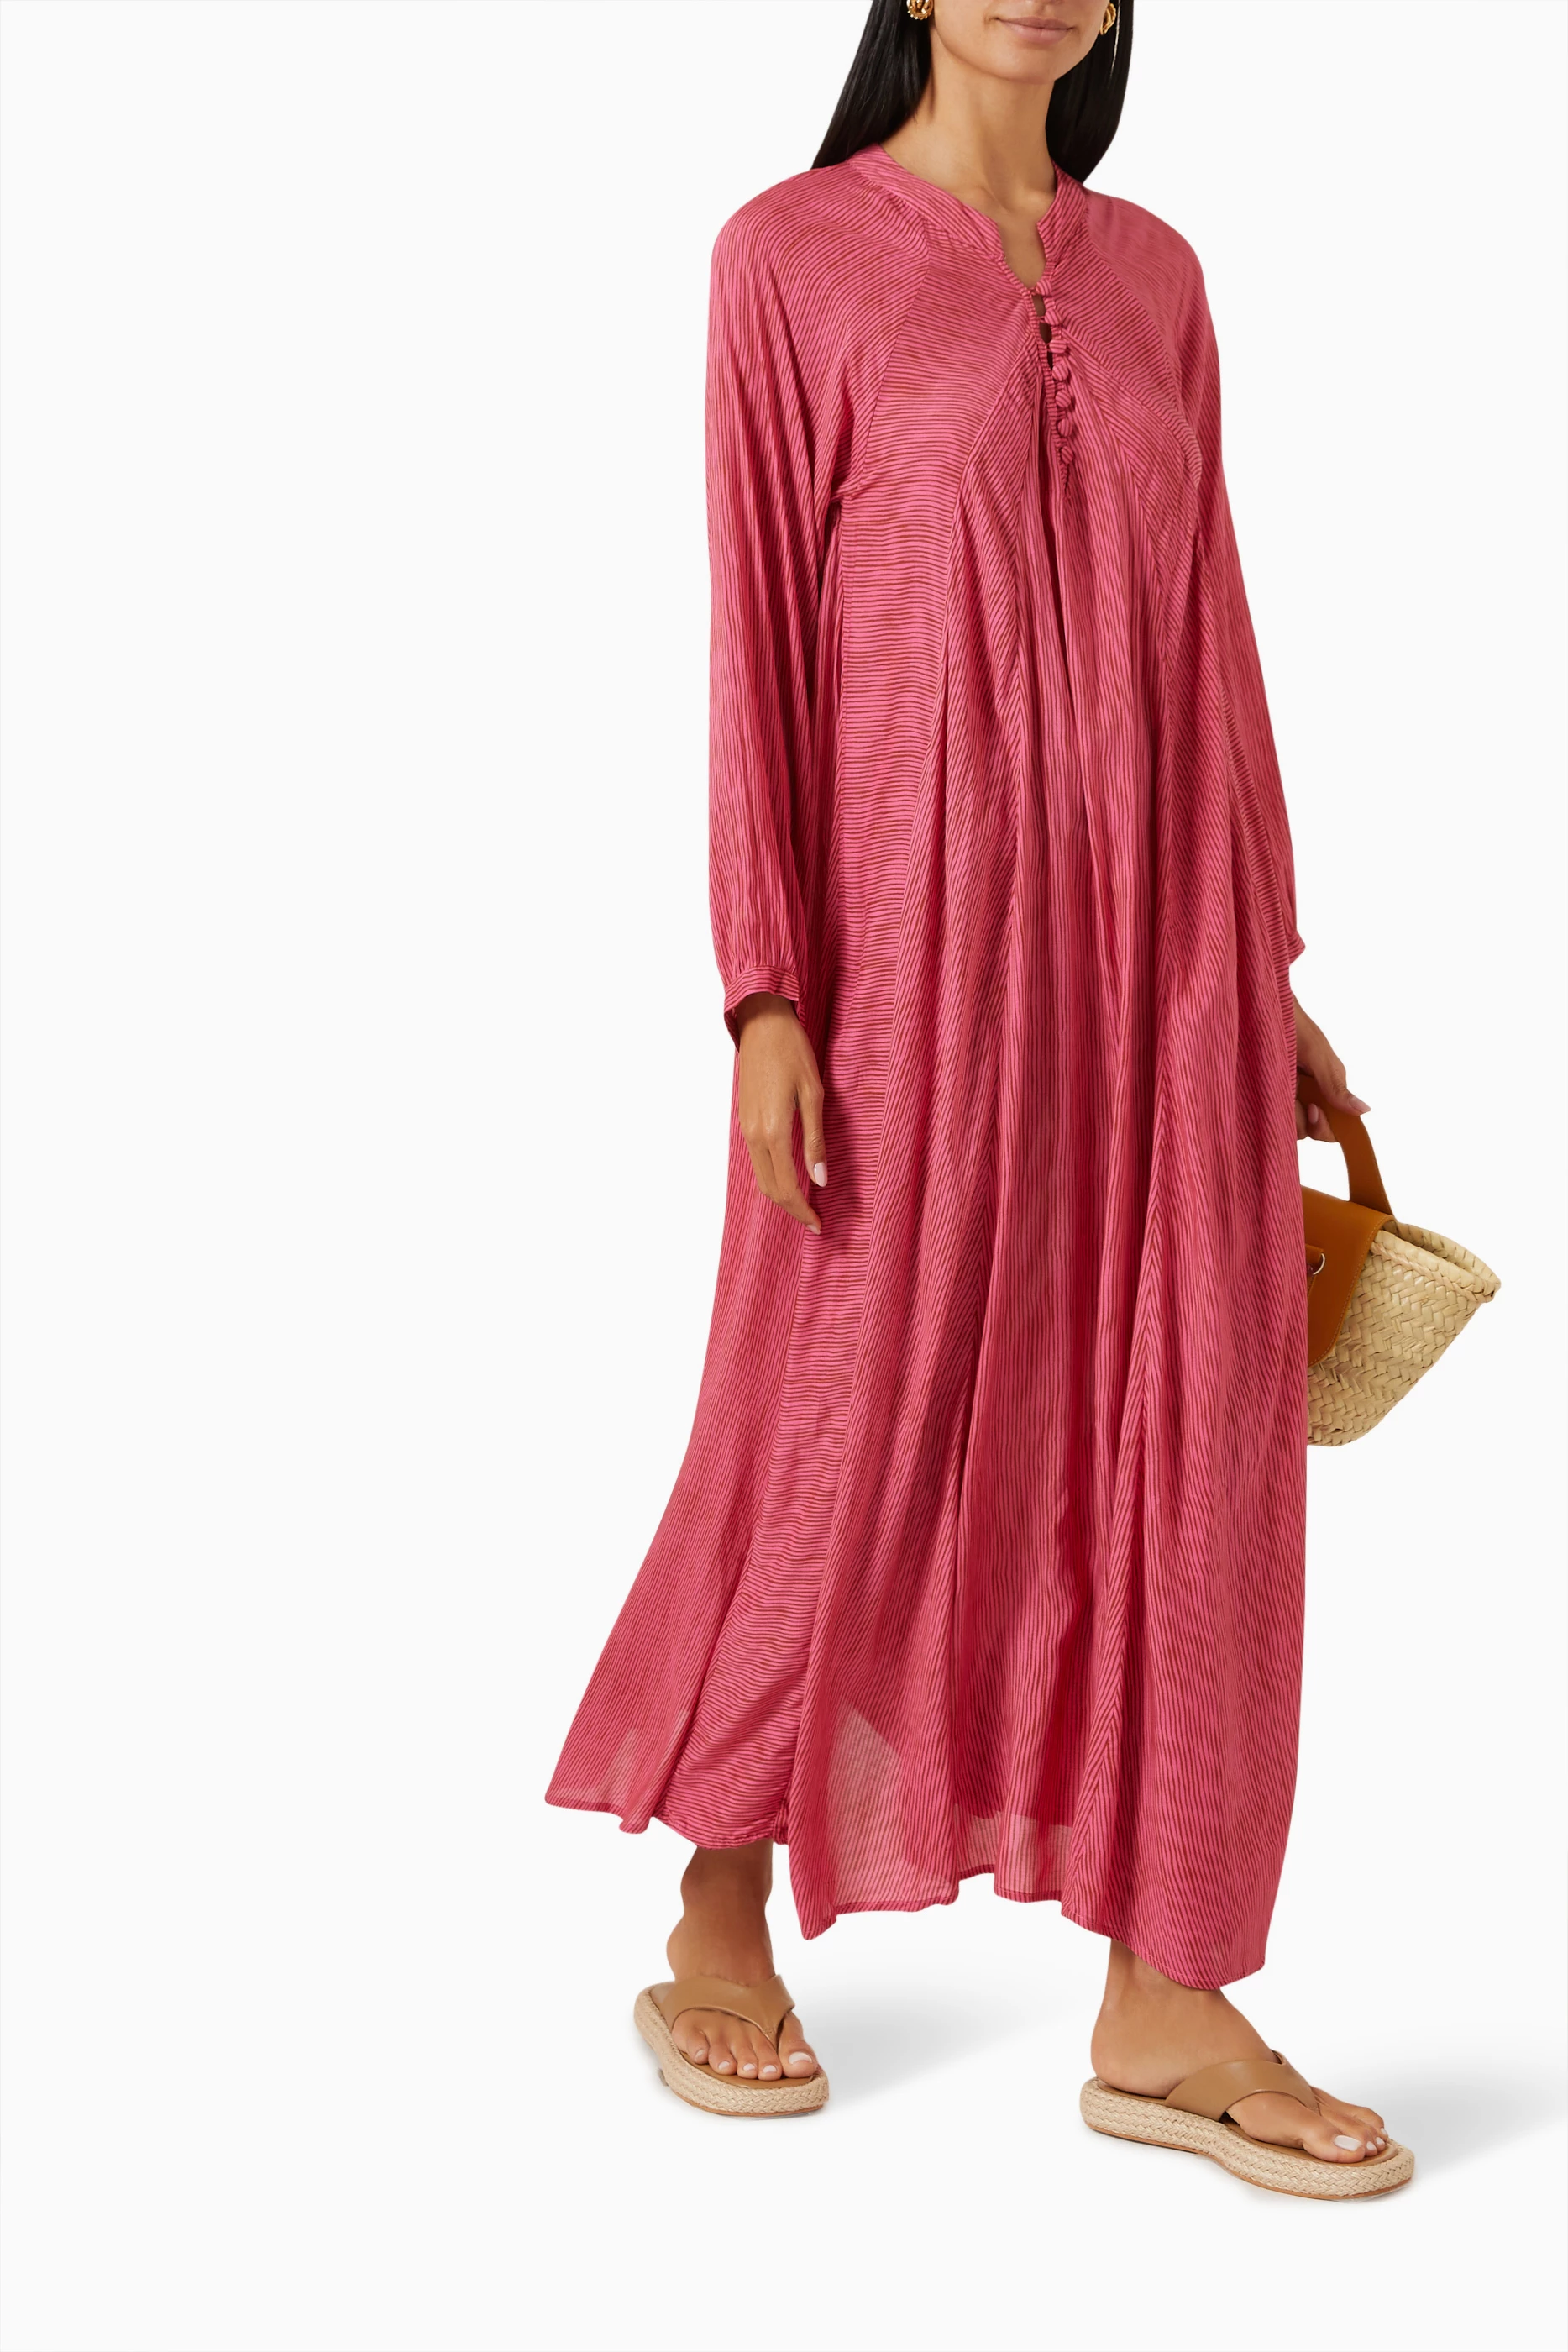 Shop Natalie Martin Pink Isobel Dress for WOMEN | Ounass Kuwait